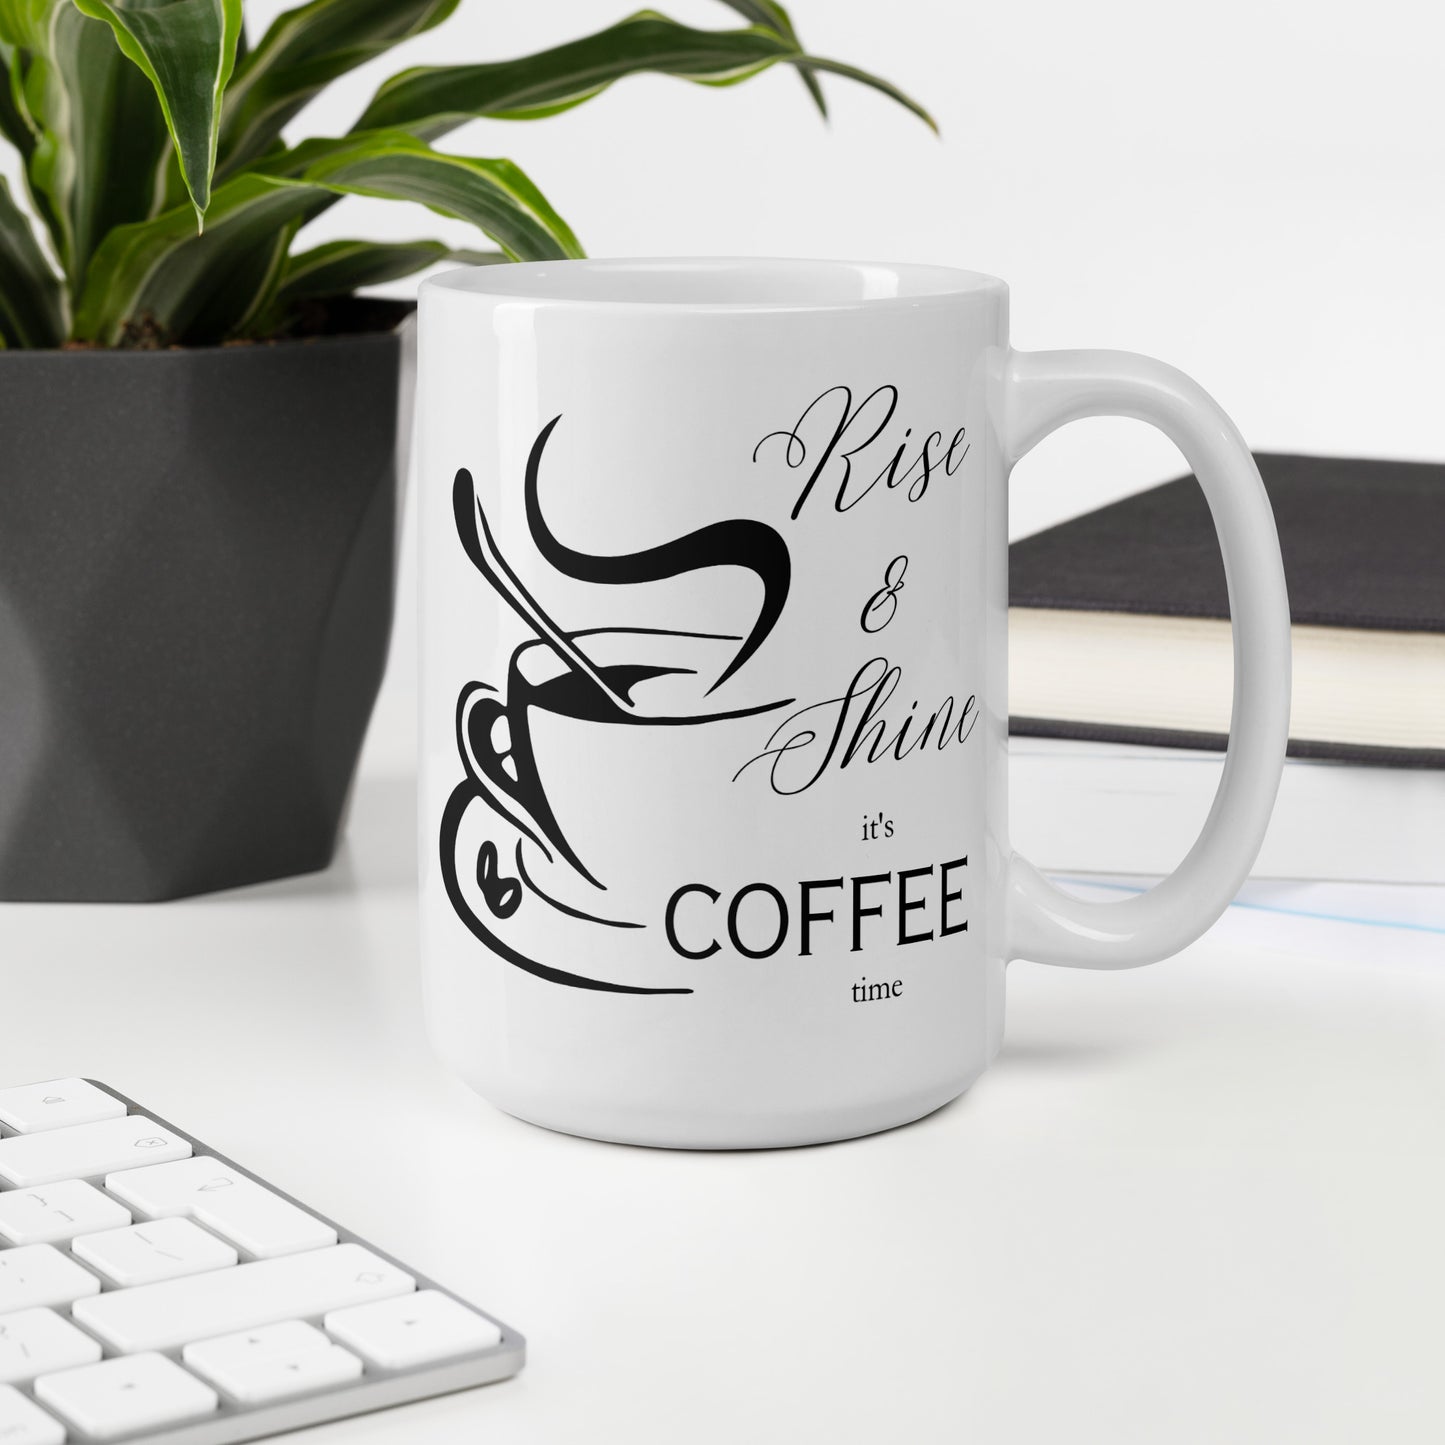 Rise & Shine it's Coffee Time Elegant White glossy mug